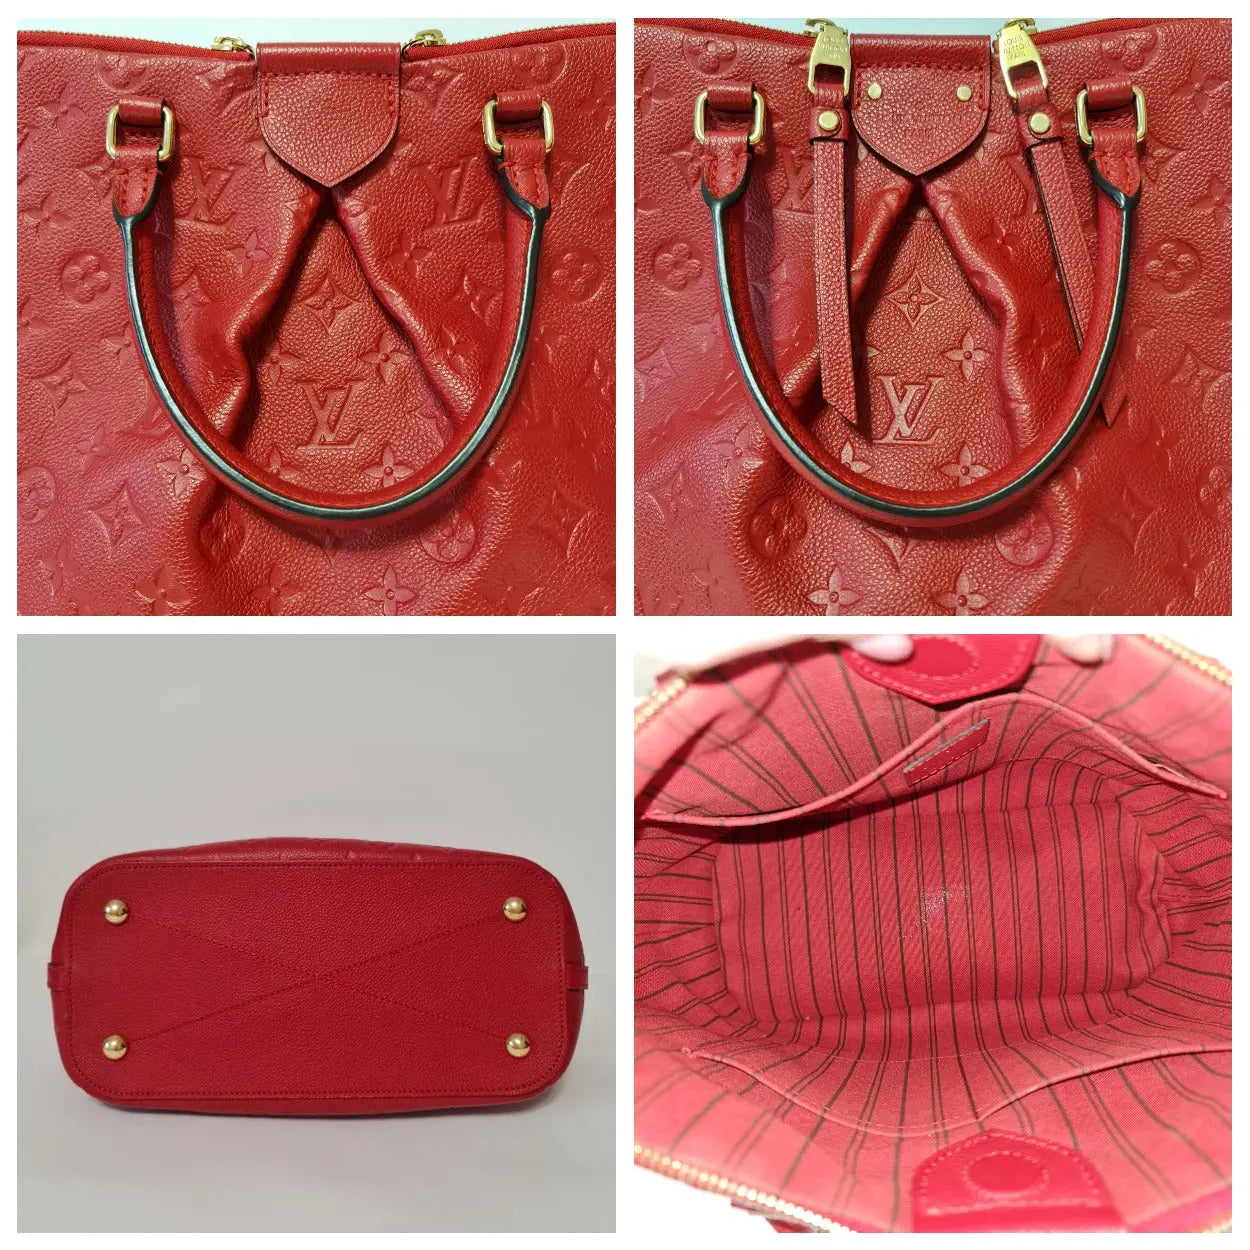 Louis Vuitton Red Monogram Leather Empreinte Mazarine PM 2way